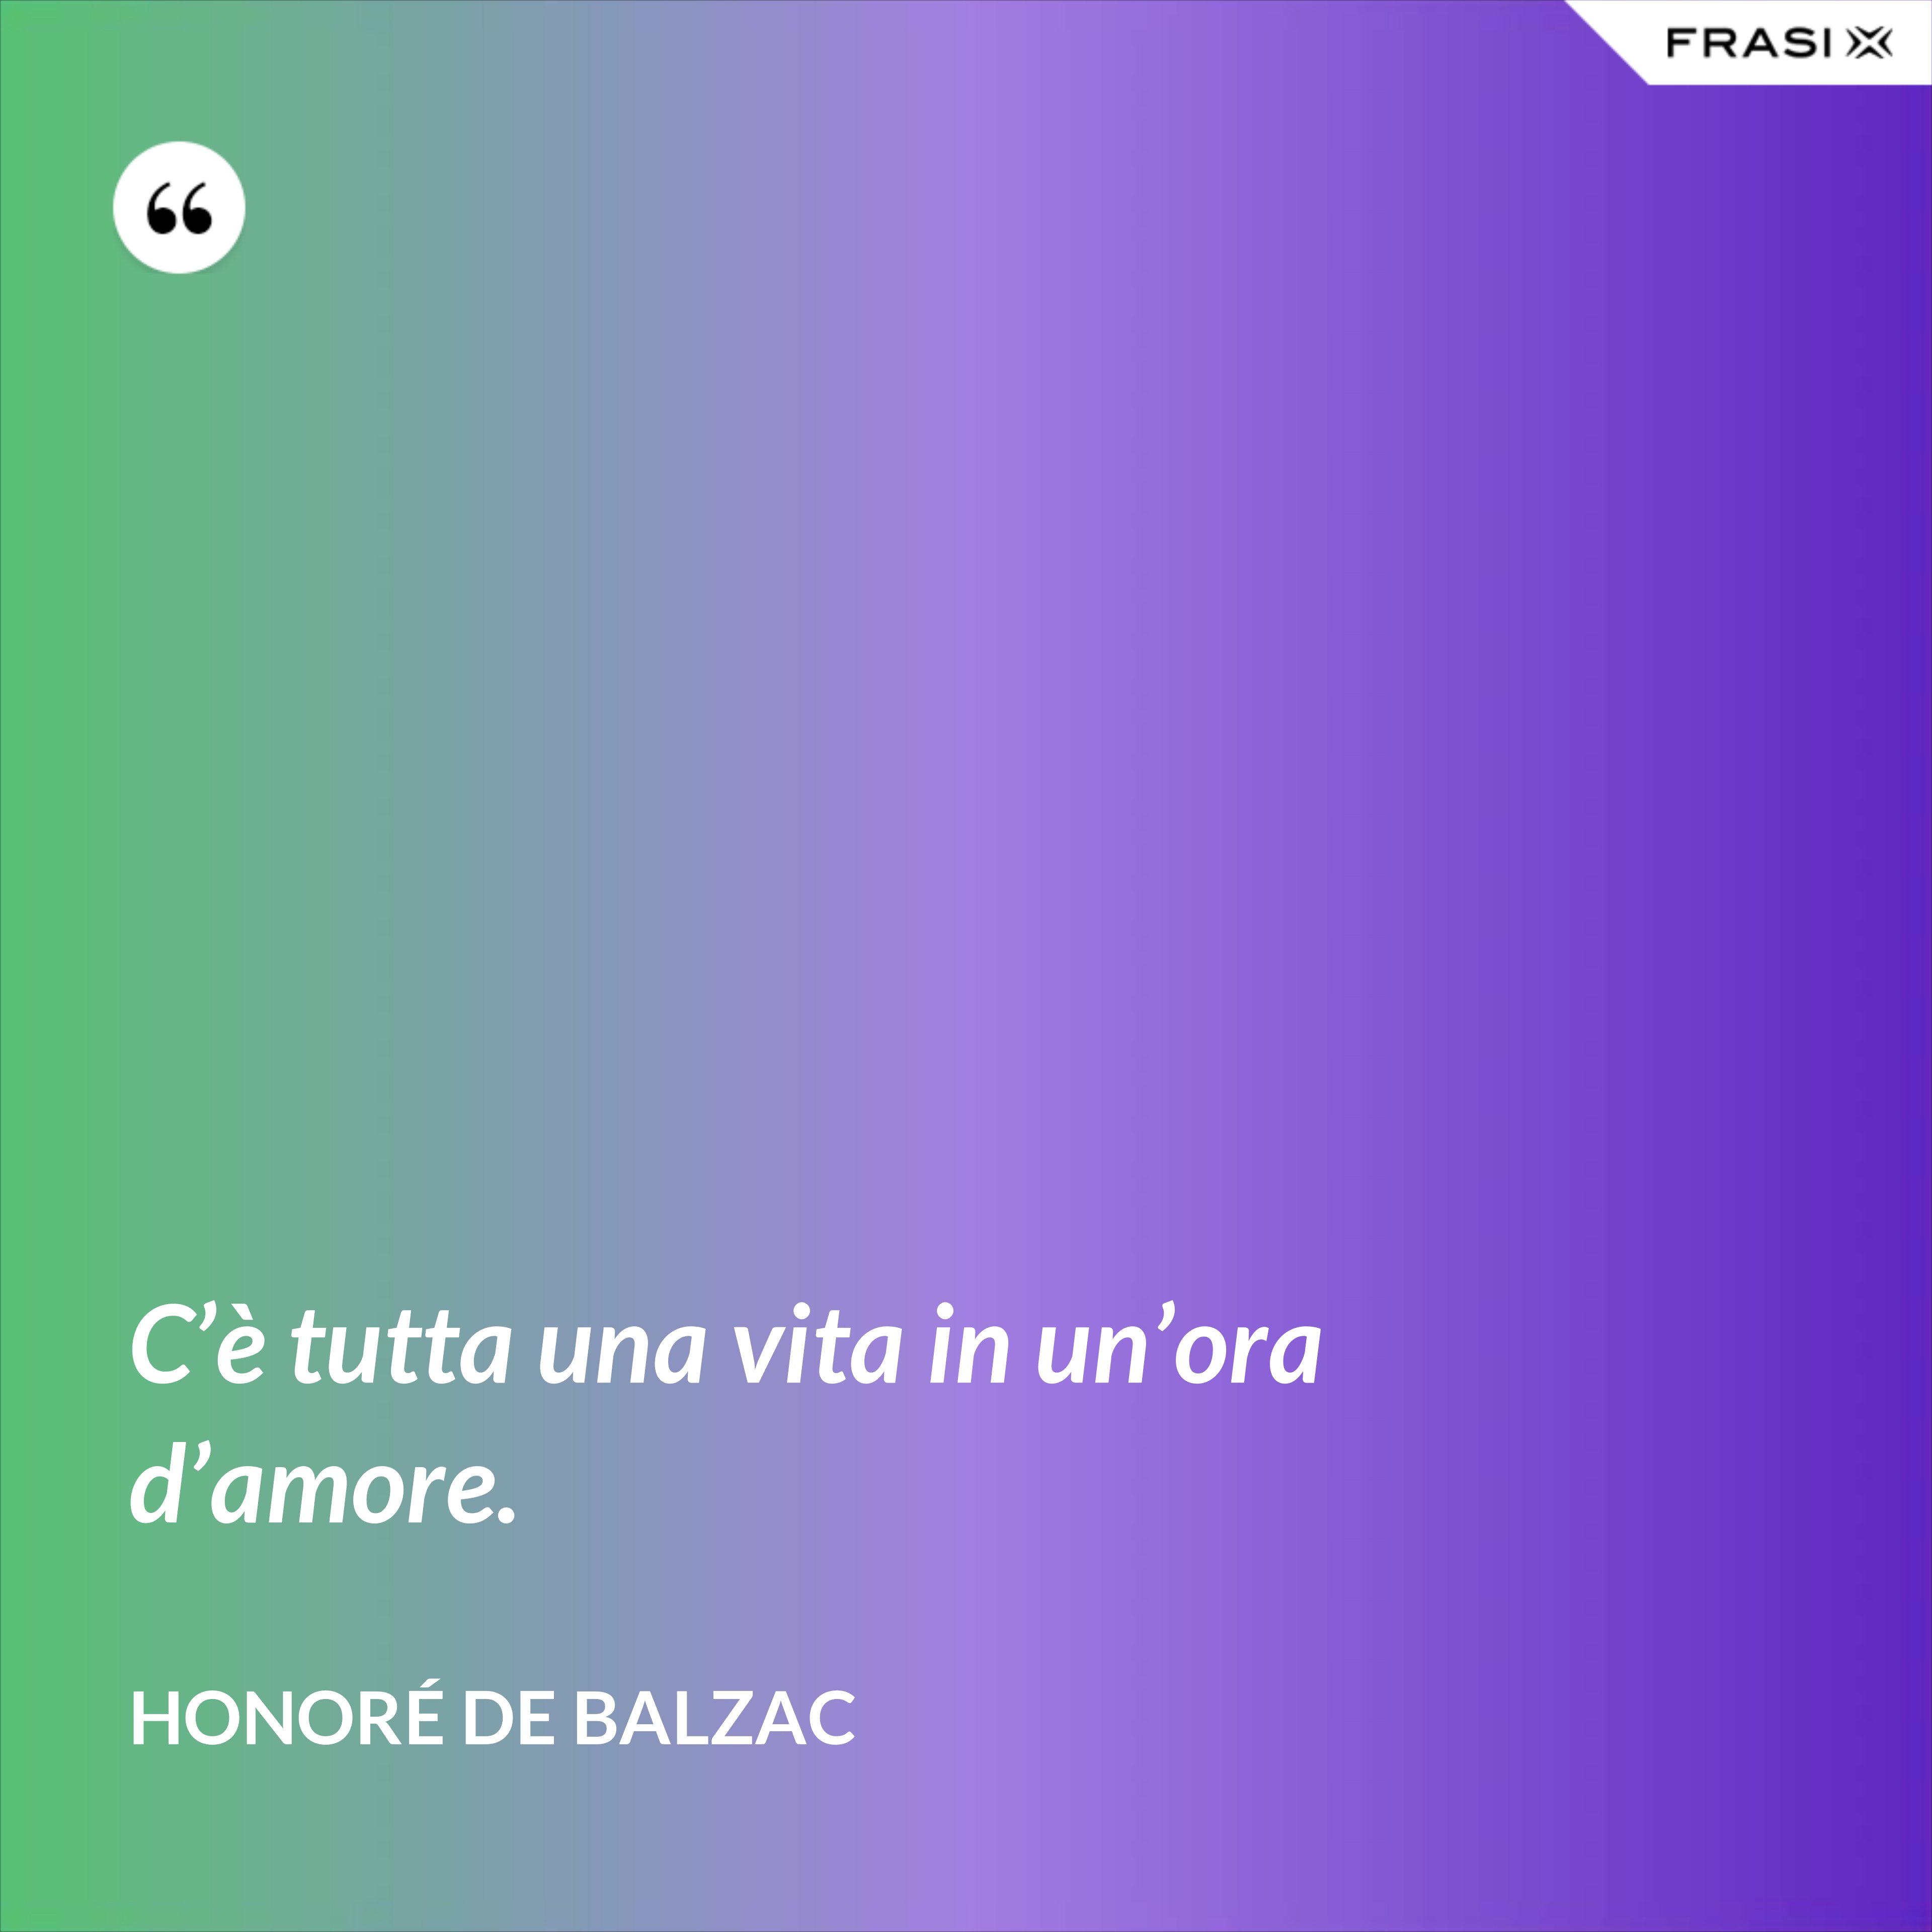 C’è tutta una vita in un’ora d’amore. - Honoré de Balzac